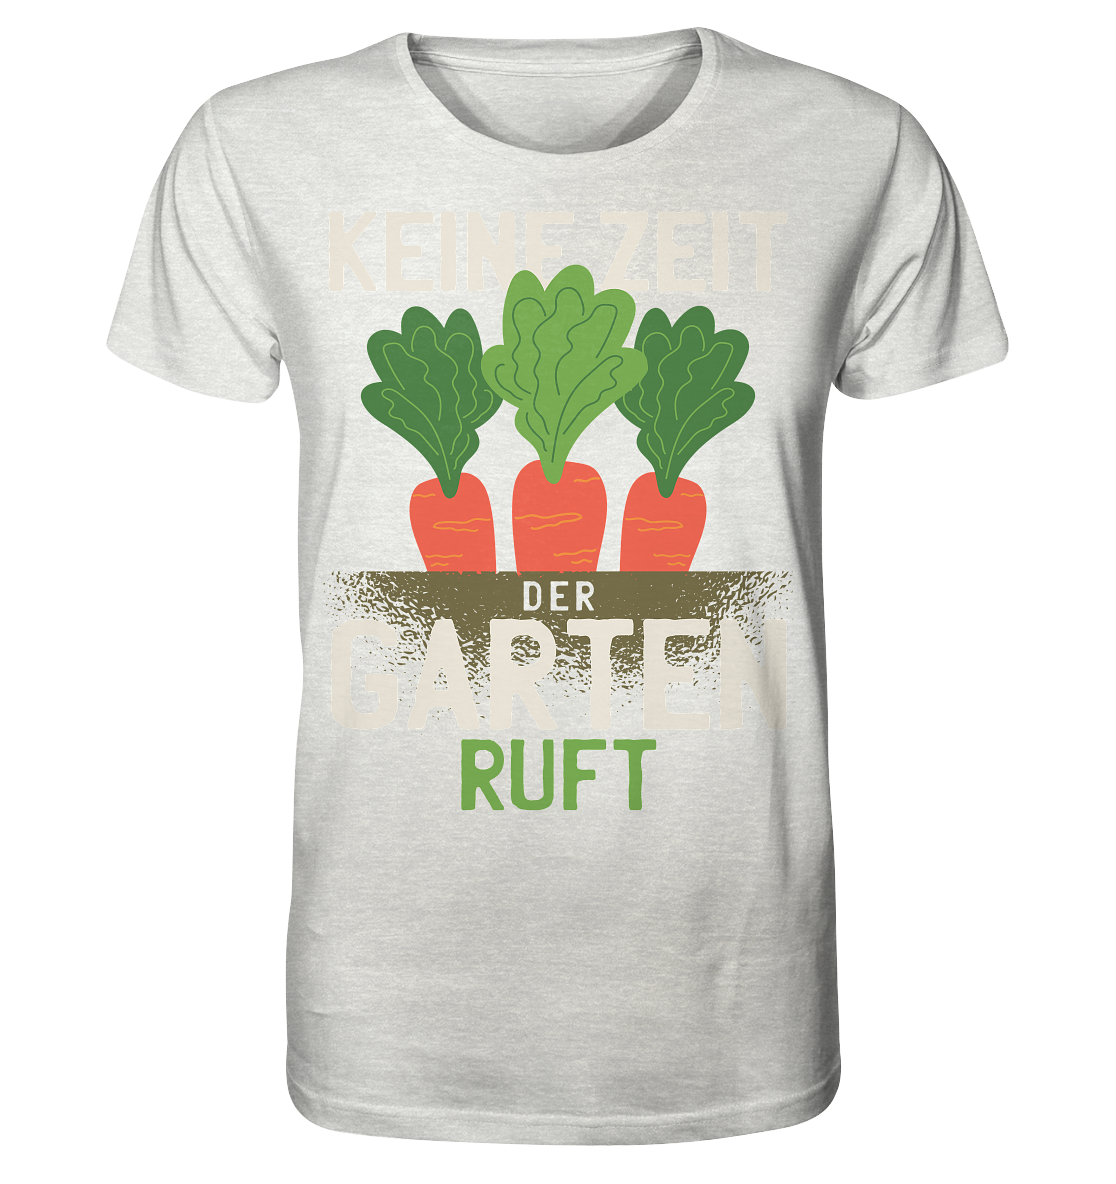 Keine Zeit der Garten ruft - Organic Shirt (meliert) - Online Kaufhaus München